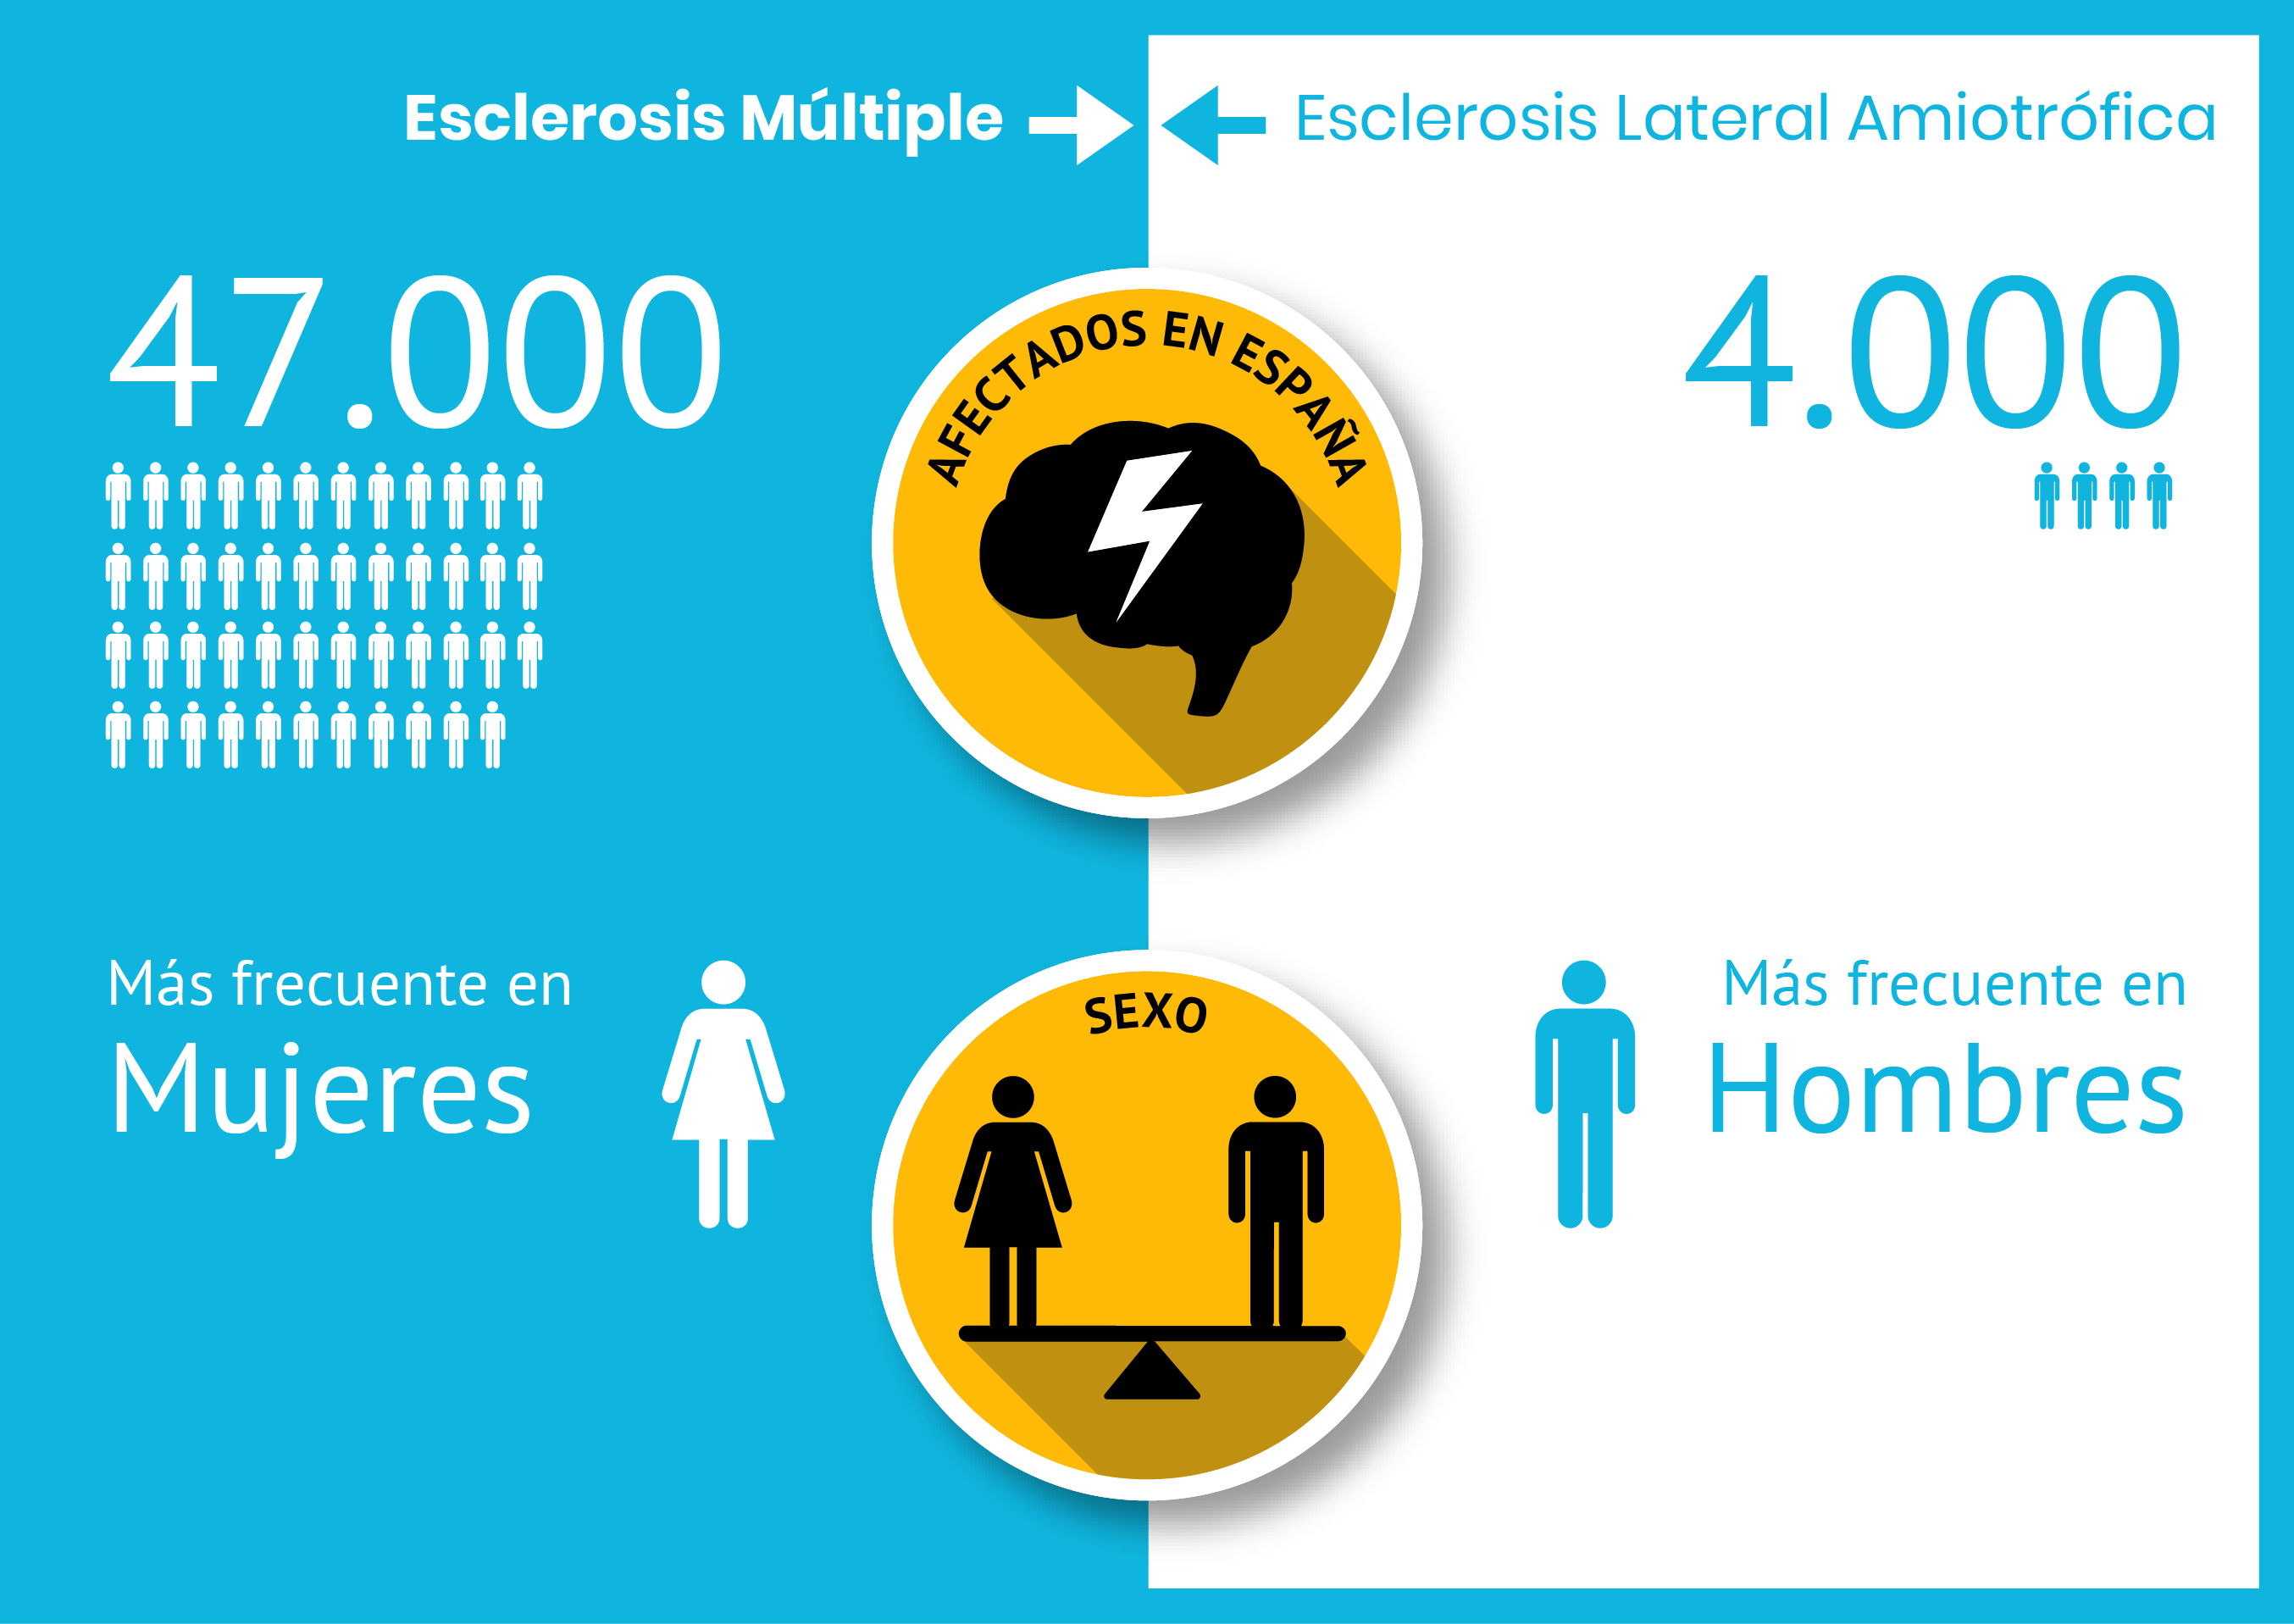 Diferencias en cuanto a número de afectados y sexo en la Esclerosis Múltiple y la Esclerosis Lateral Amiotrófica (ELA).